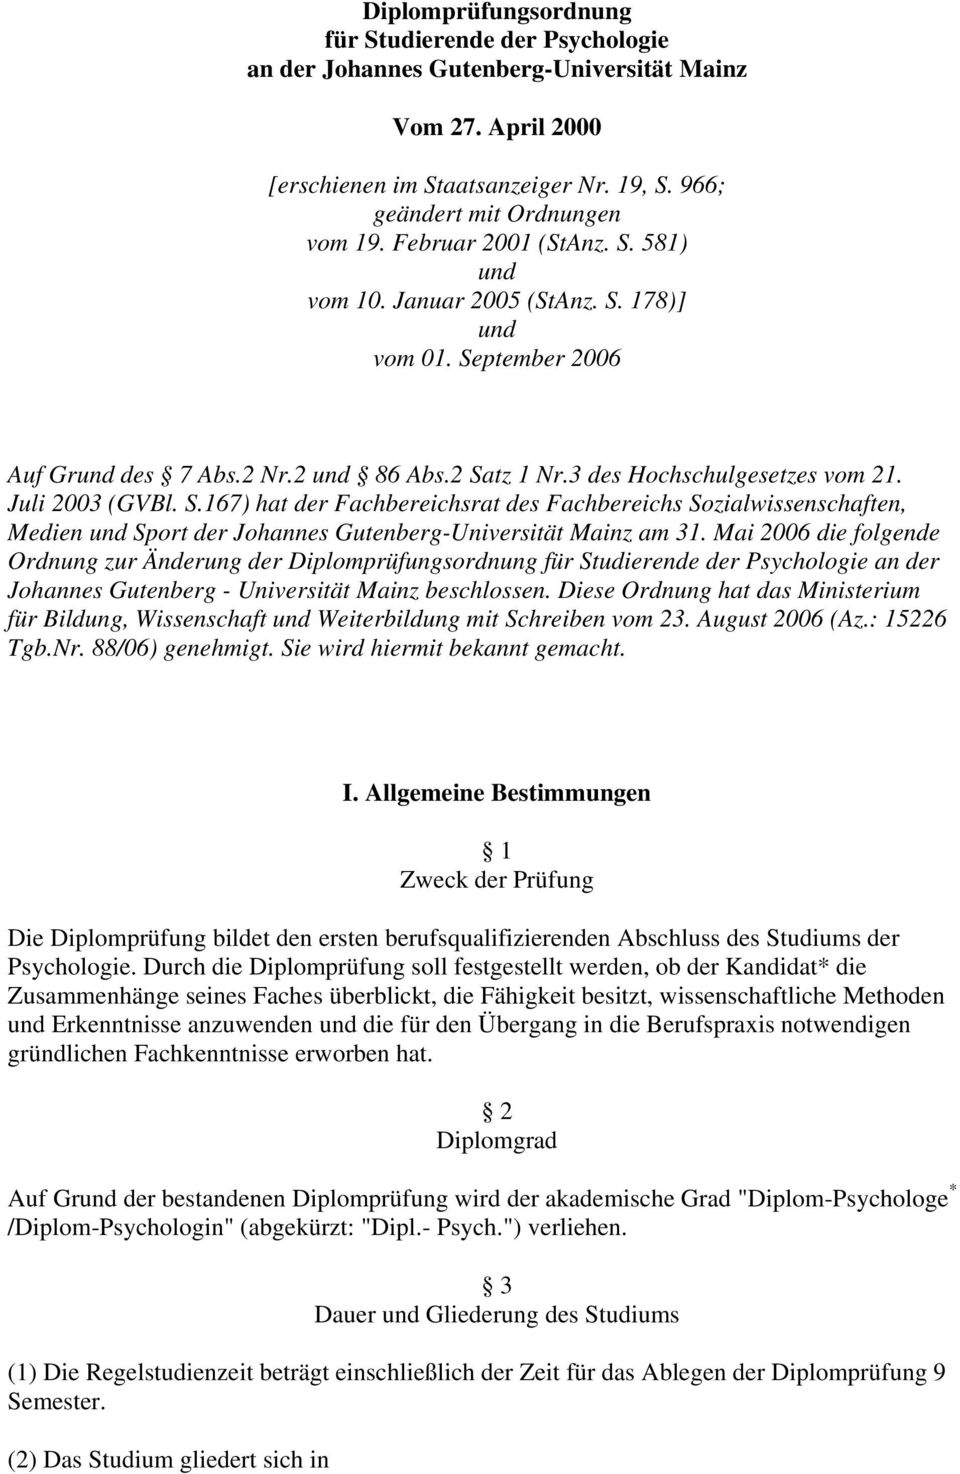 Mai 2006 die folgende Ordnung zur Änderung der Diplomprüfungsordnung für Studierende der Psychologie an der Johannes Gutenberg - Universität Mainz beschlossen.